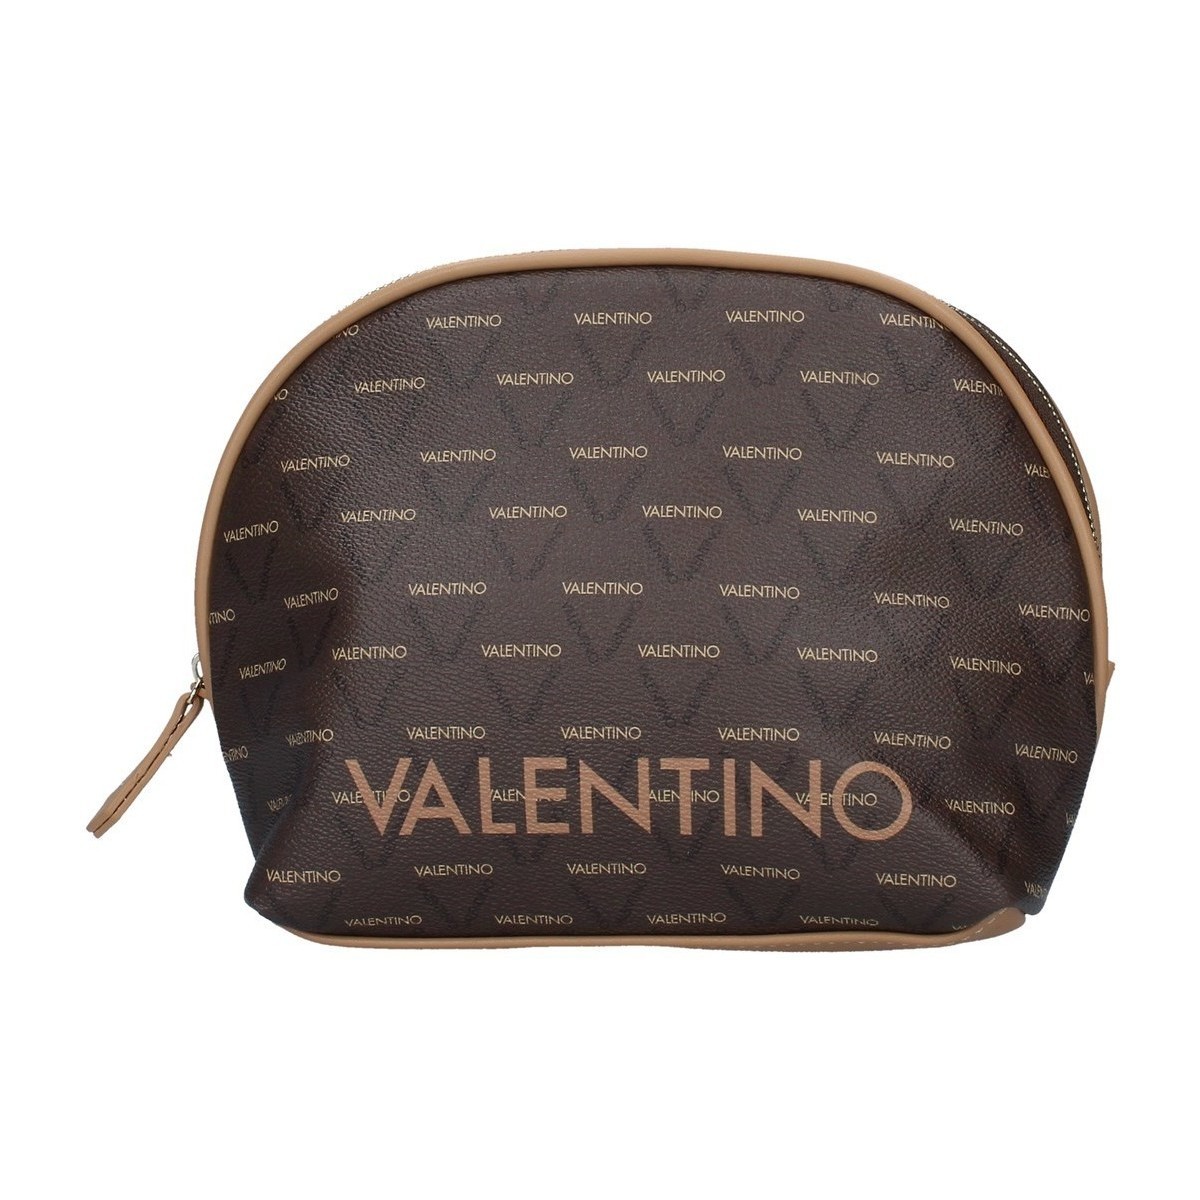 Malas Pouch / Clutch Valentino Bags VBE3KG533 Castanho